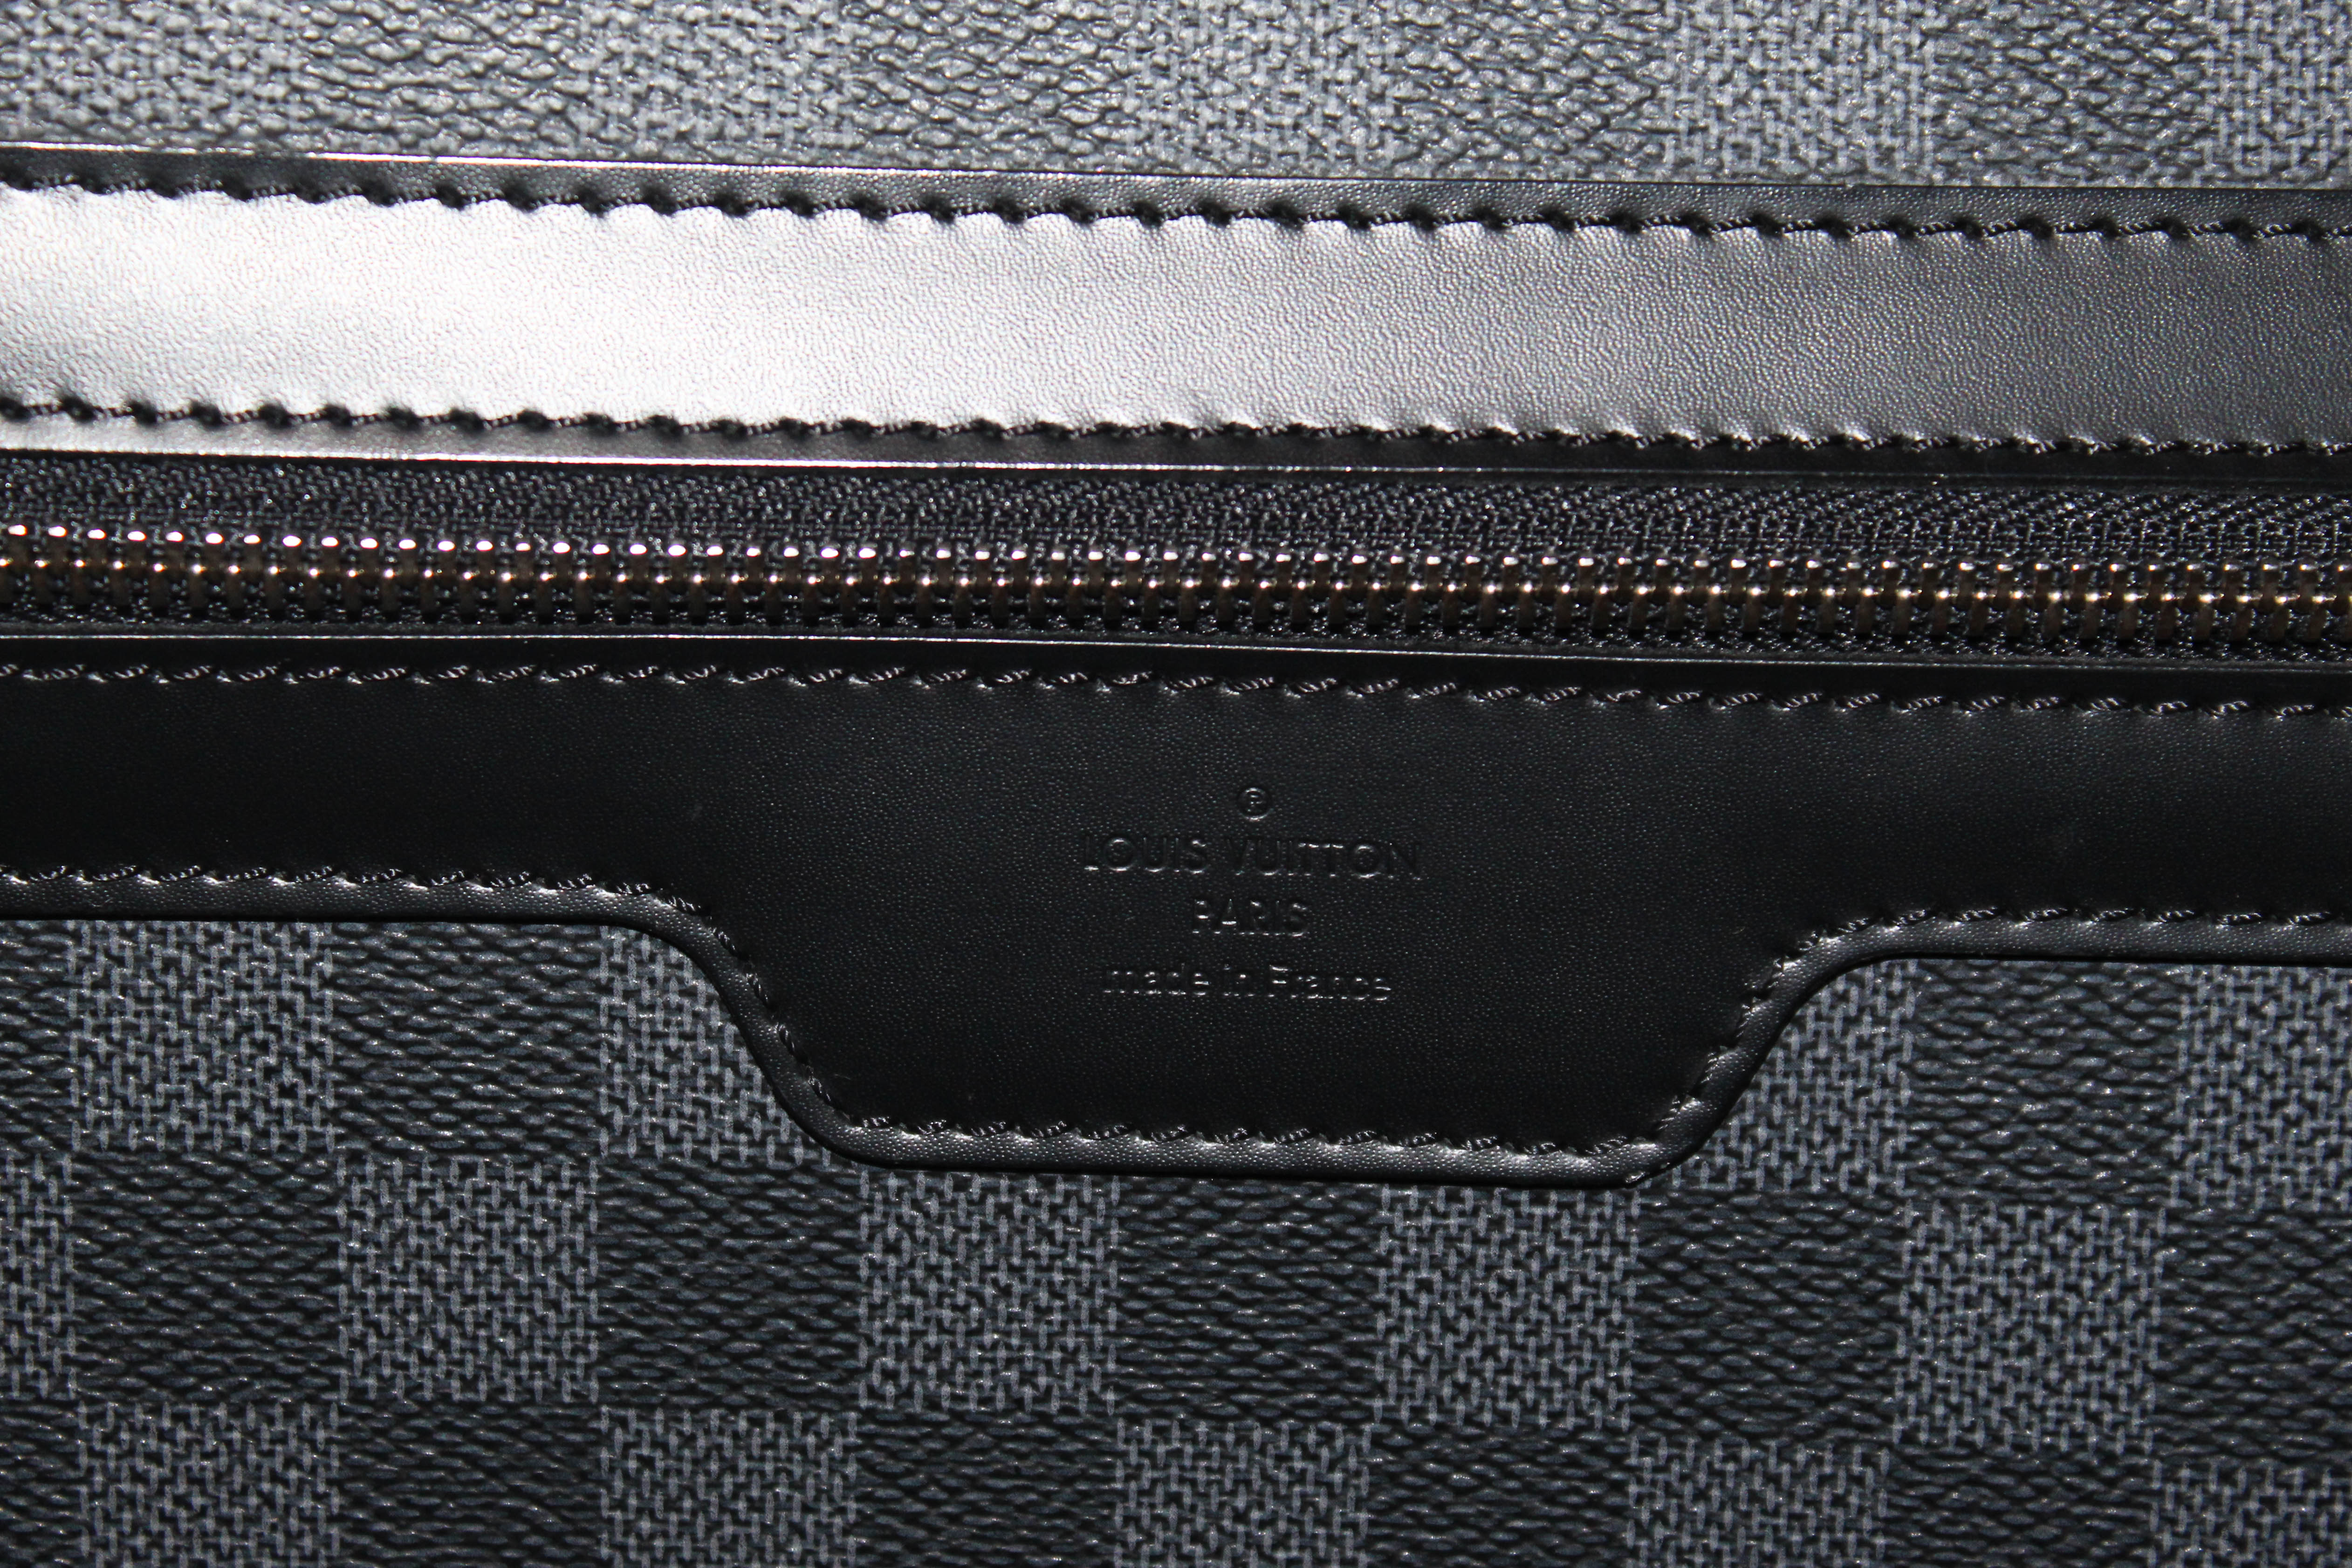 Authentic Louis Vuitton Damier Graphite Canvas Pegase 45 Rolling Suitcase